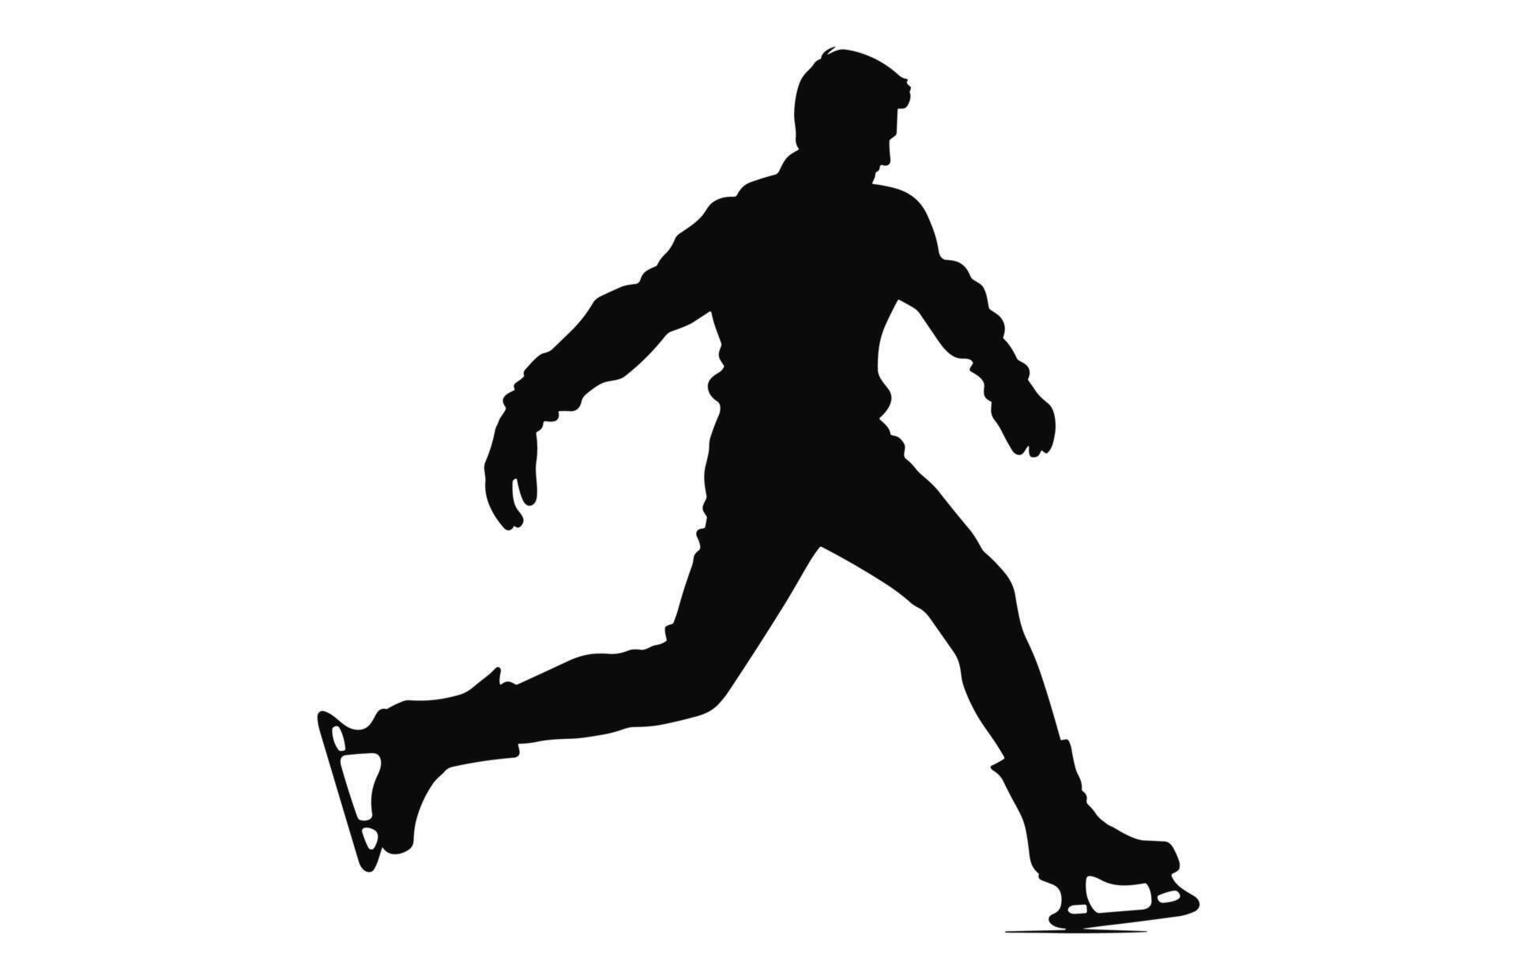 Mens figuur ijs het schaatsen silhouet vector bundel, mannetje figuur schaatser silhouetten zwart clip art reeks